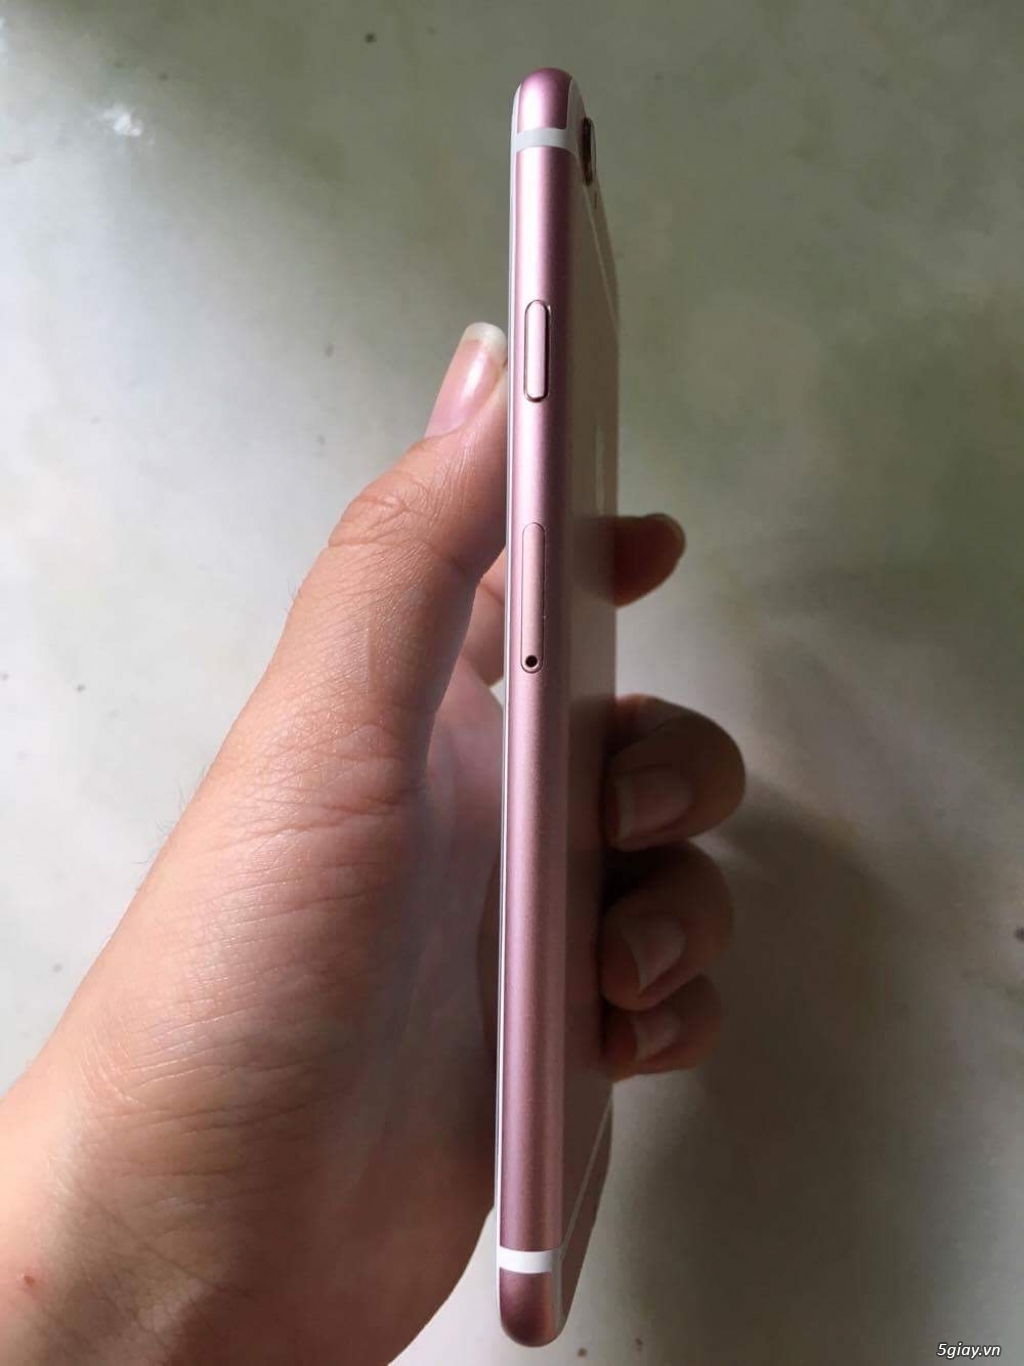 iPhone 6s Hồng 16Gb hàng Châu Âu máy đẹp 99% Fullbox BH 29/5/2018 - 1